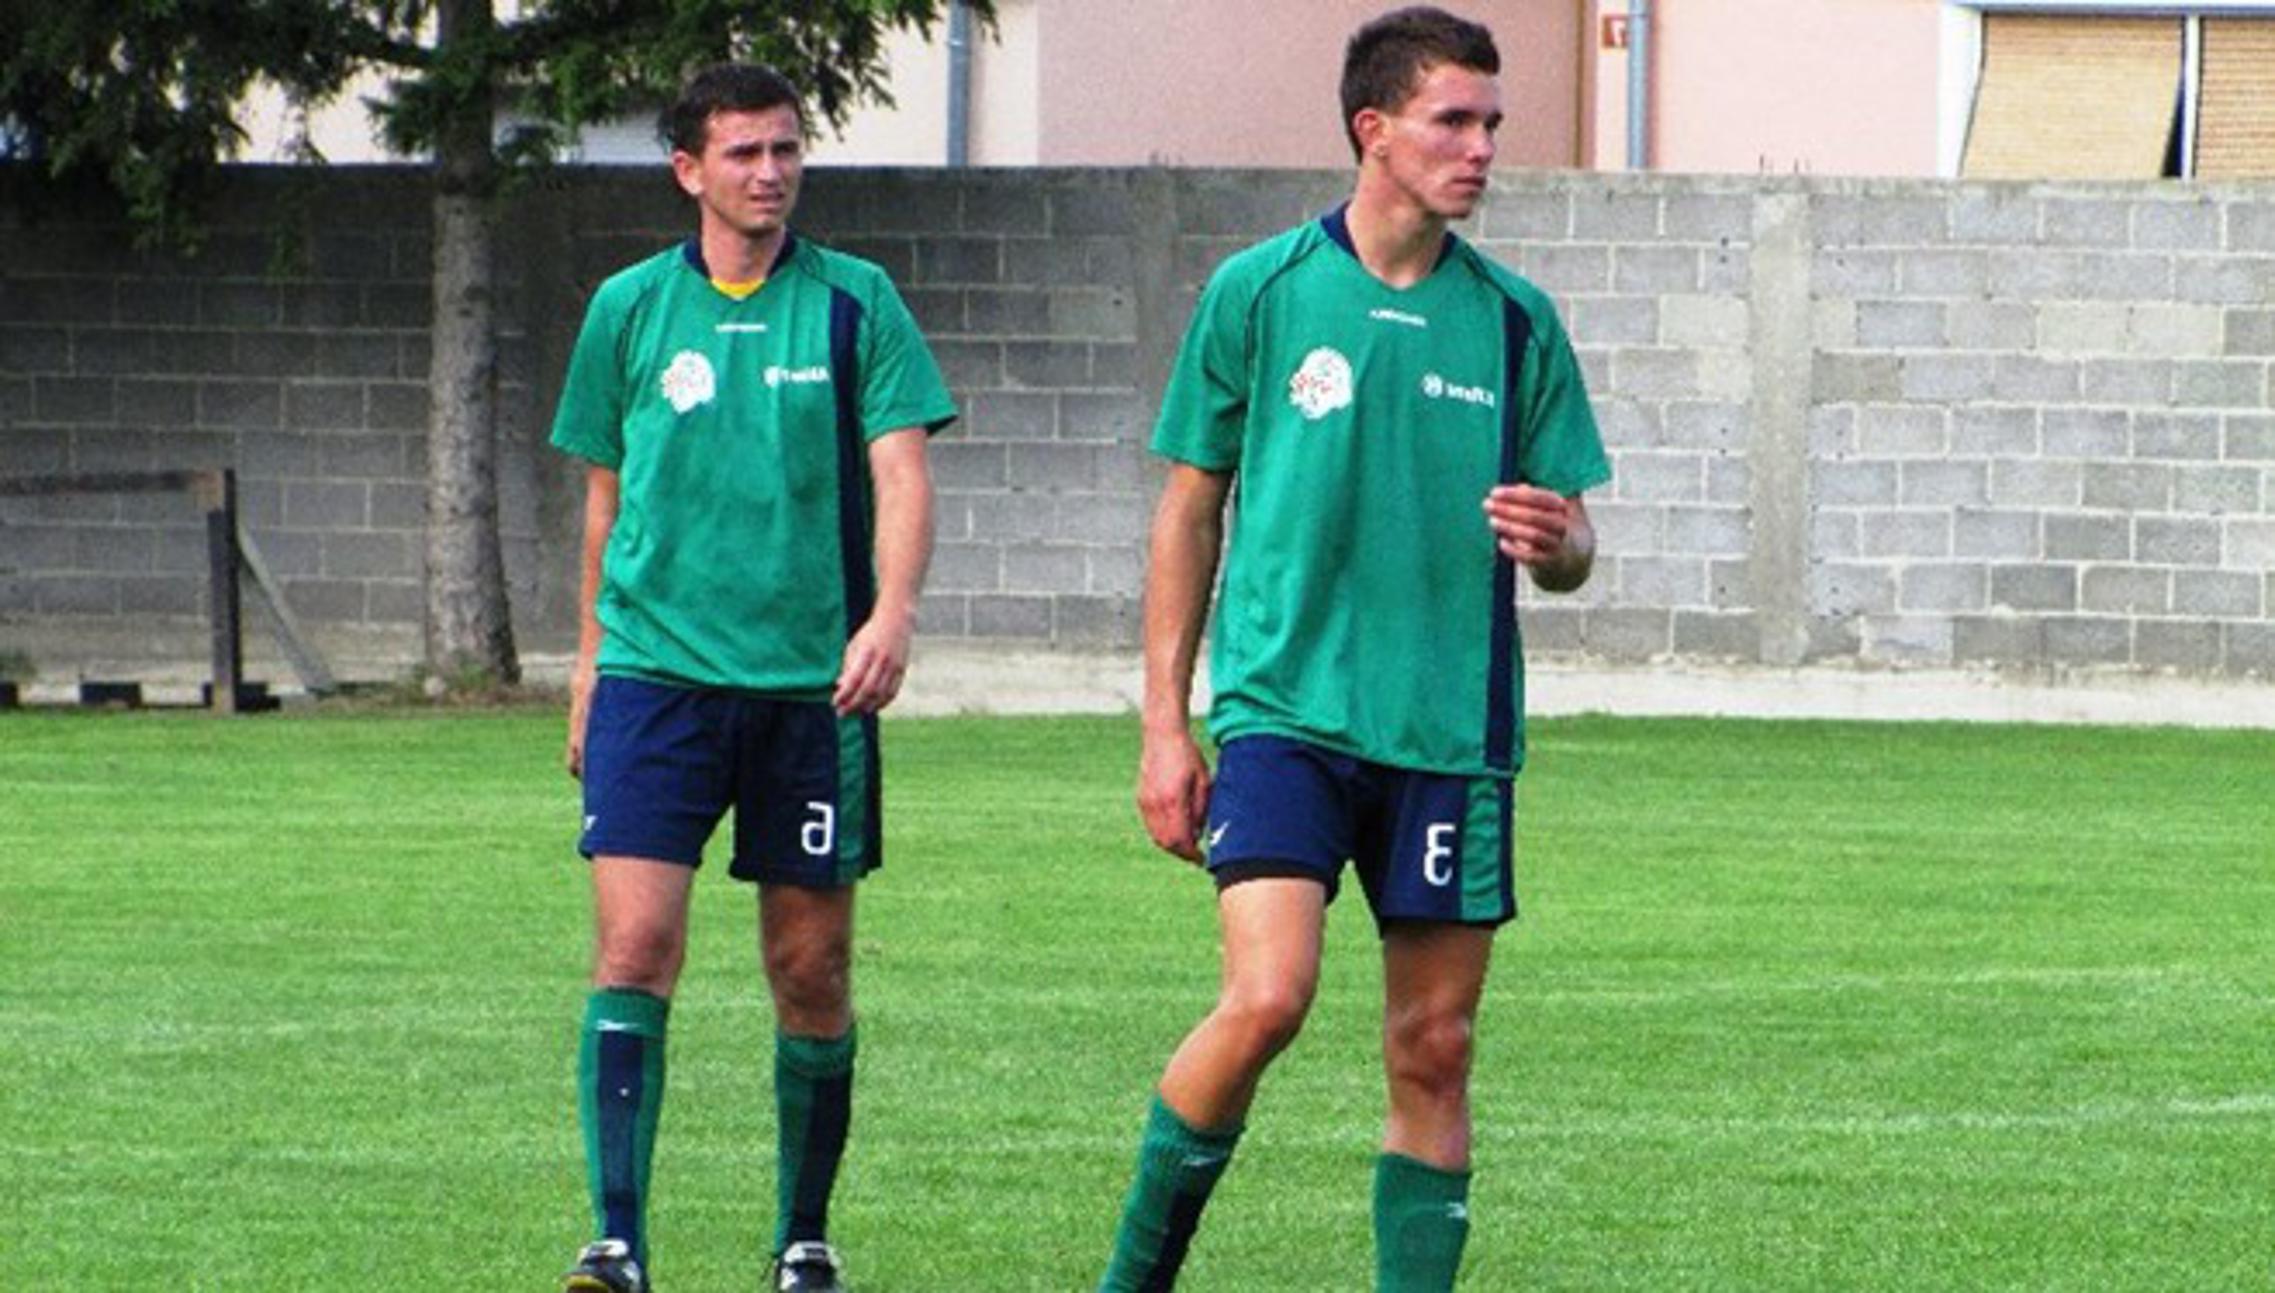 Igrači Slobodnice Mateo Stanišić i Danijel Vuksanović (lijevo)  izgubili u finalu turnira u Oriovcu